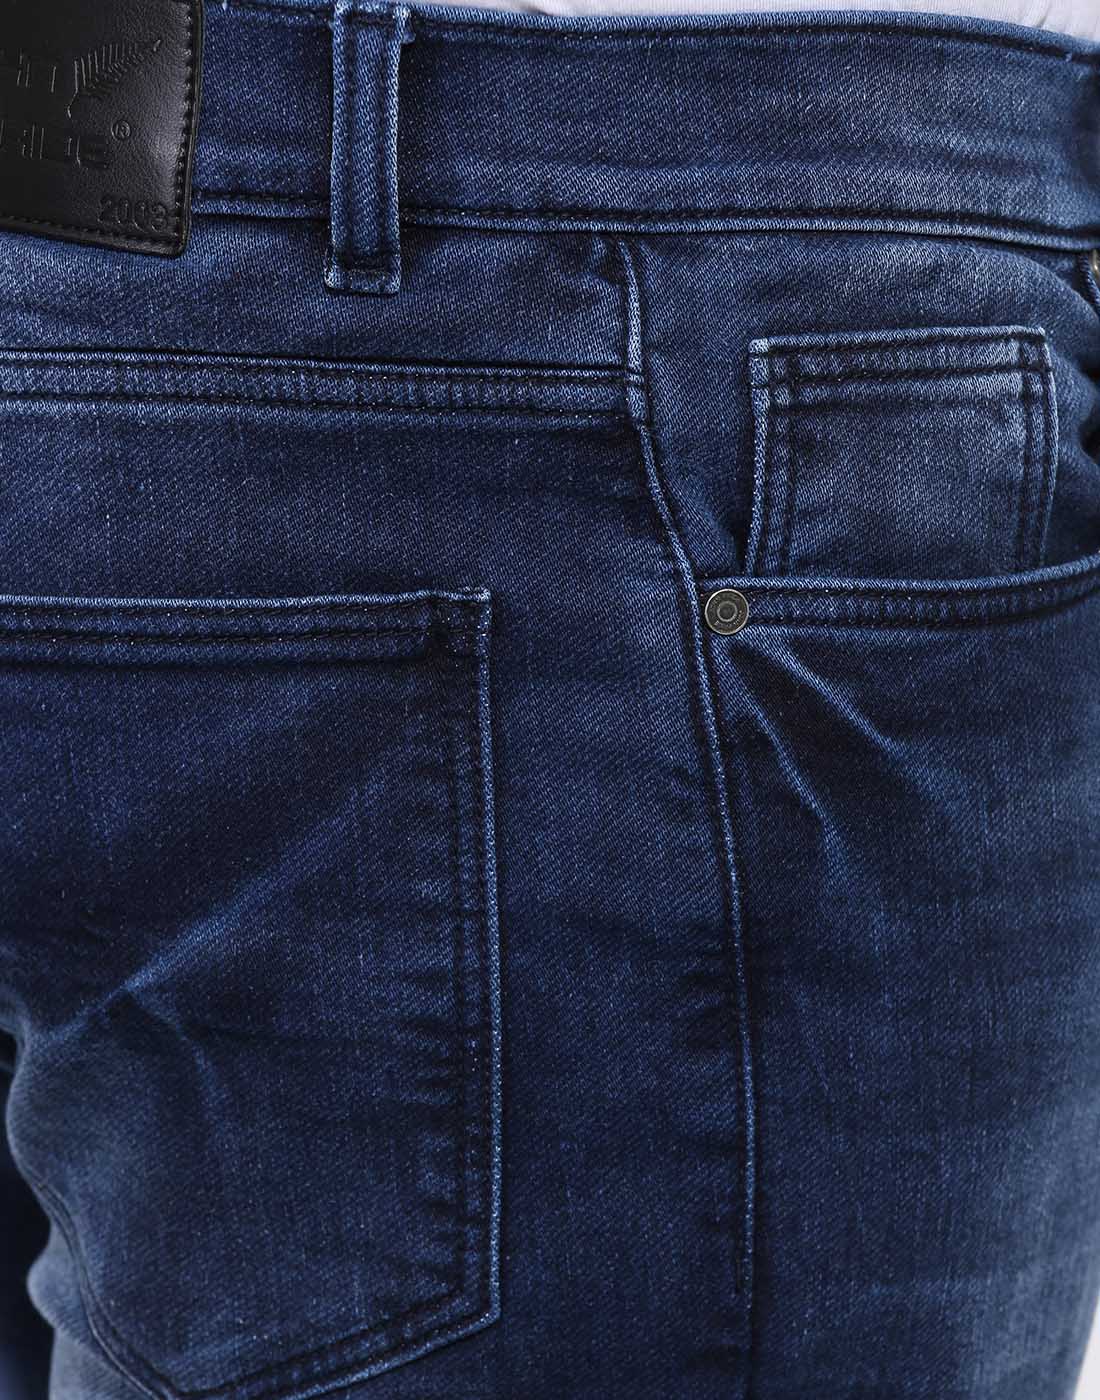 bottomwear/jeans/BEPLJPJ15151/bepljpj15151-4.jpg